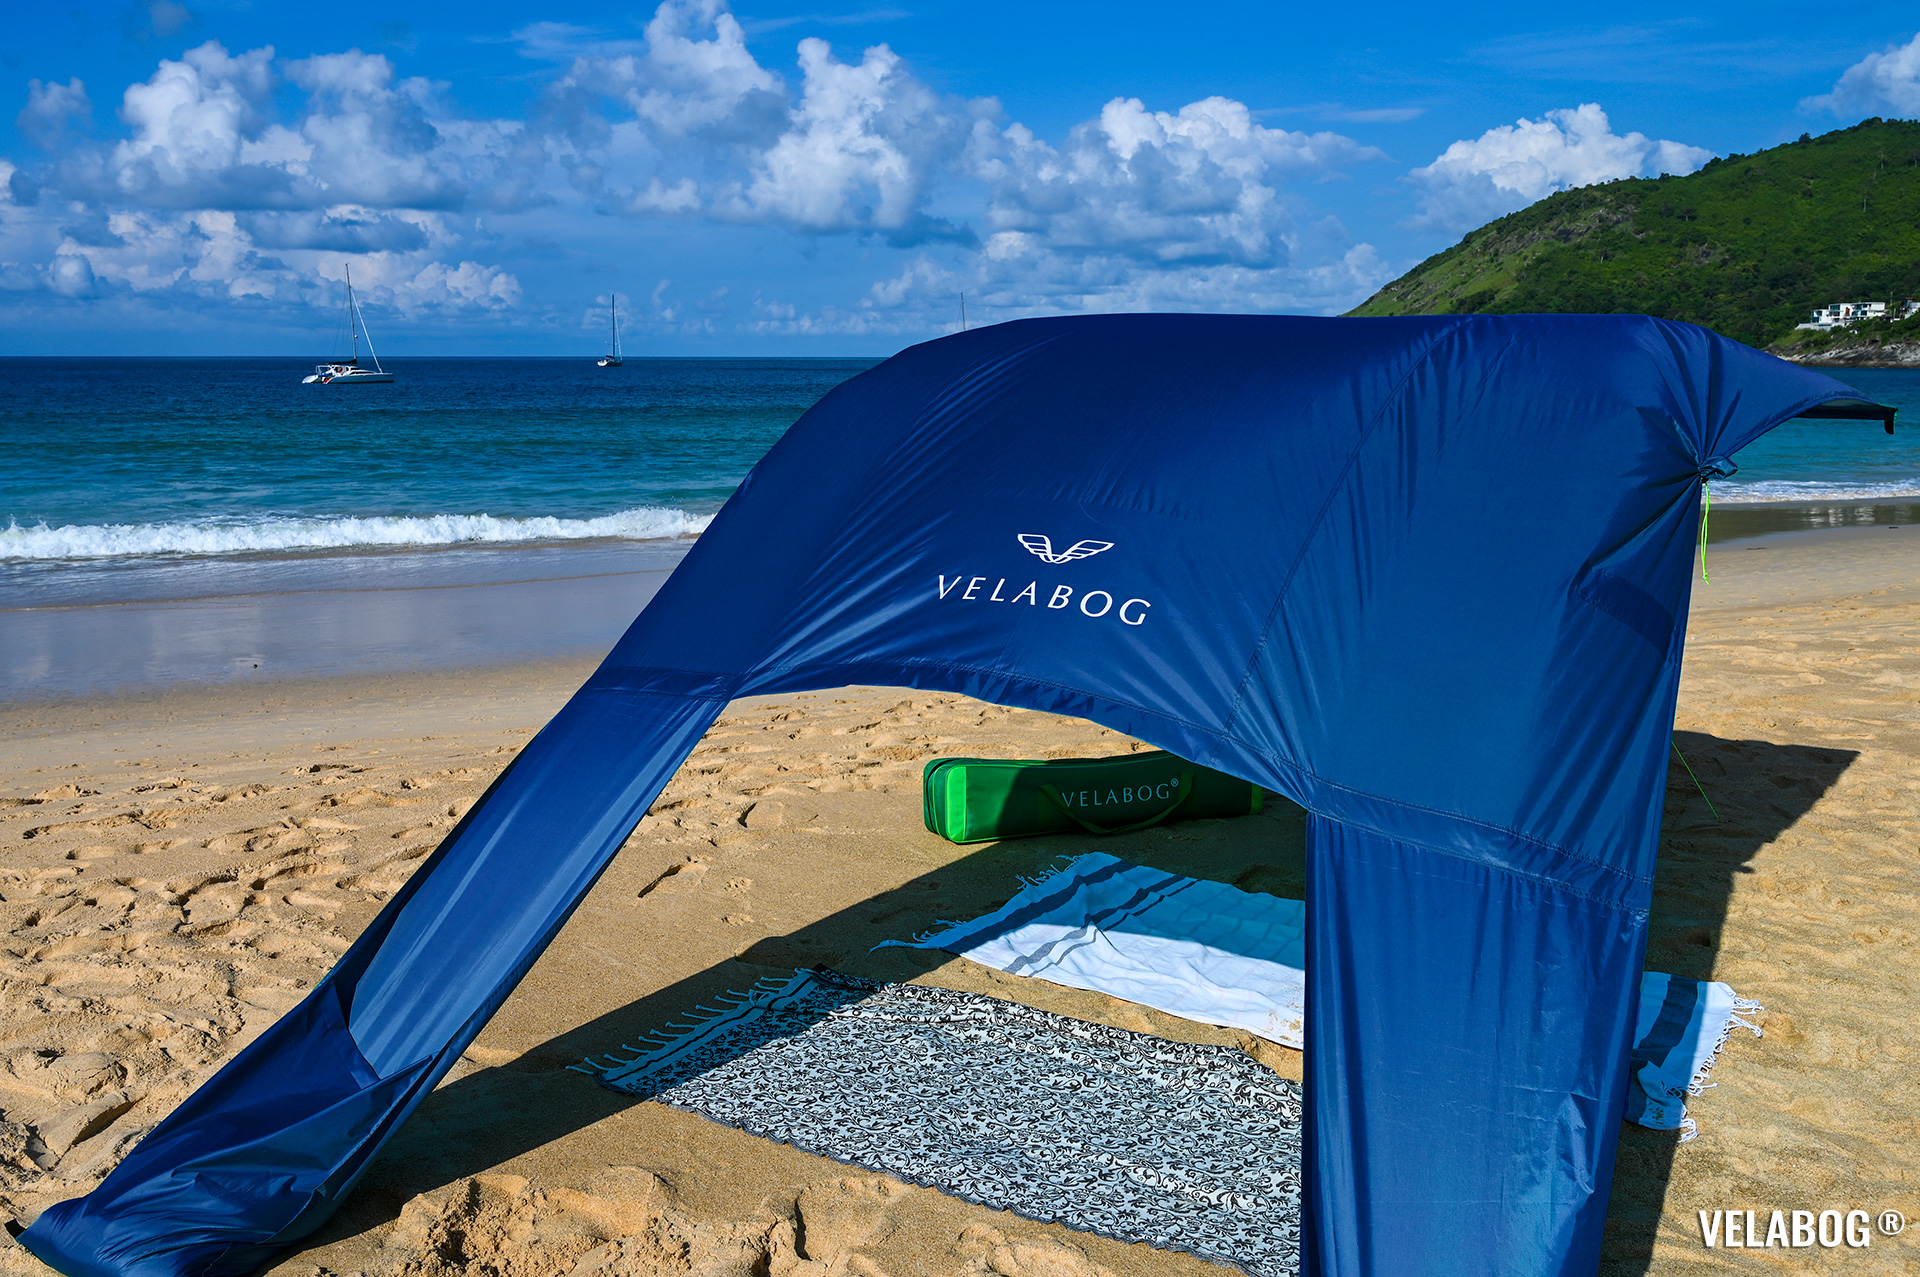 Солнечный парус Velabog «Breeze» синий. Лучшее и самое стильное укрытие от солнца на пляже. Вариант установки при слабом или сильном ветре. Вид сзади, детали.